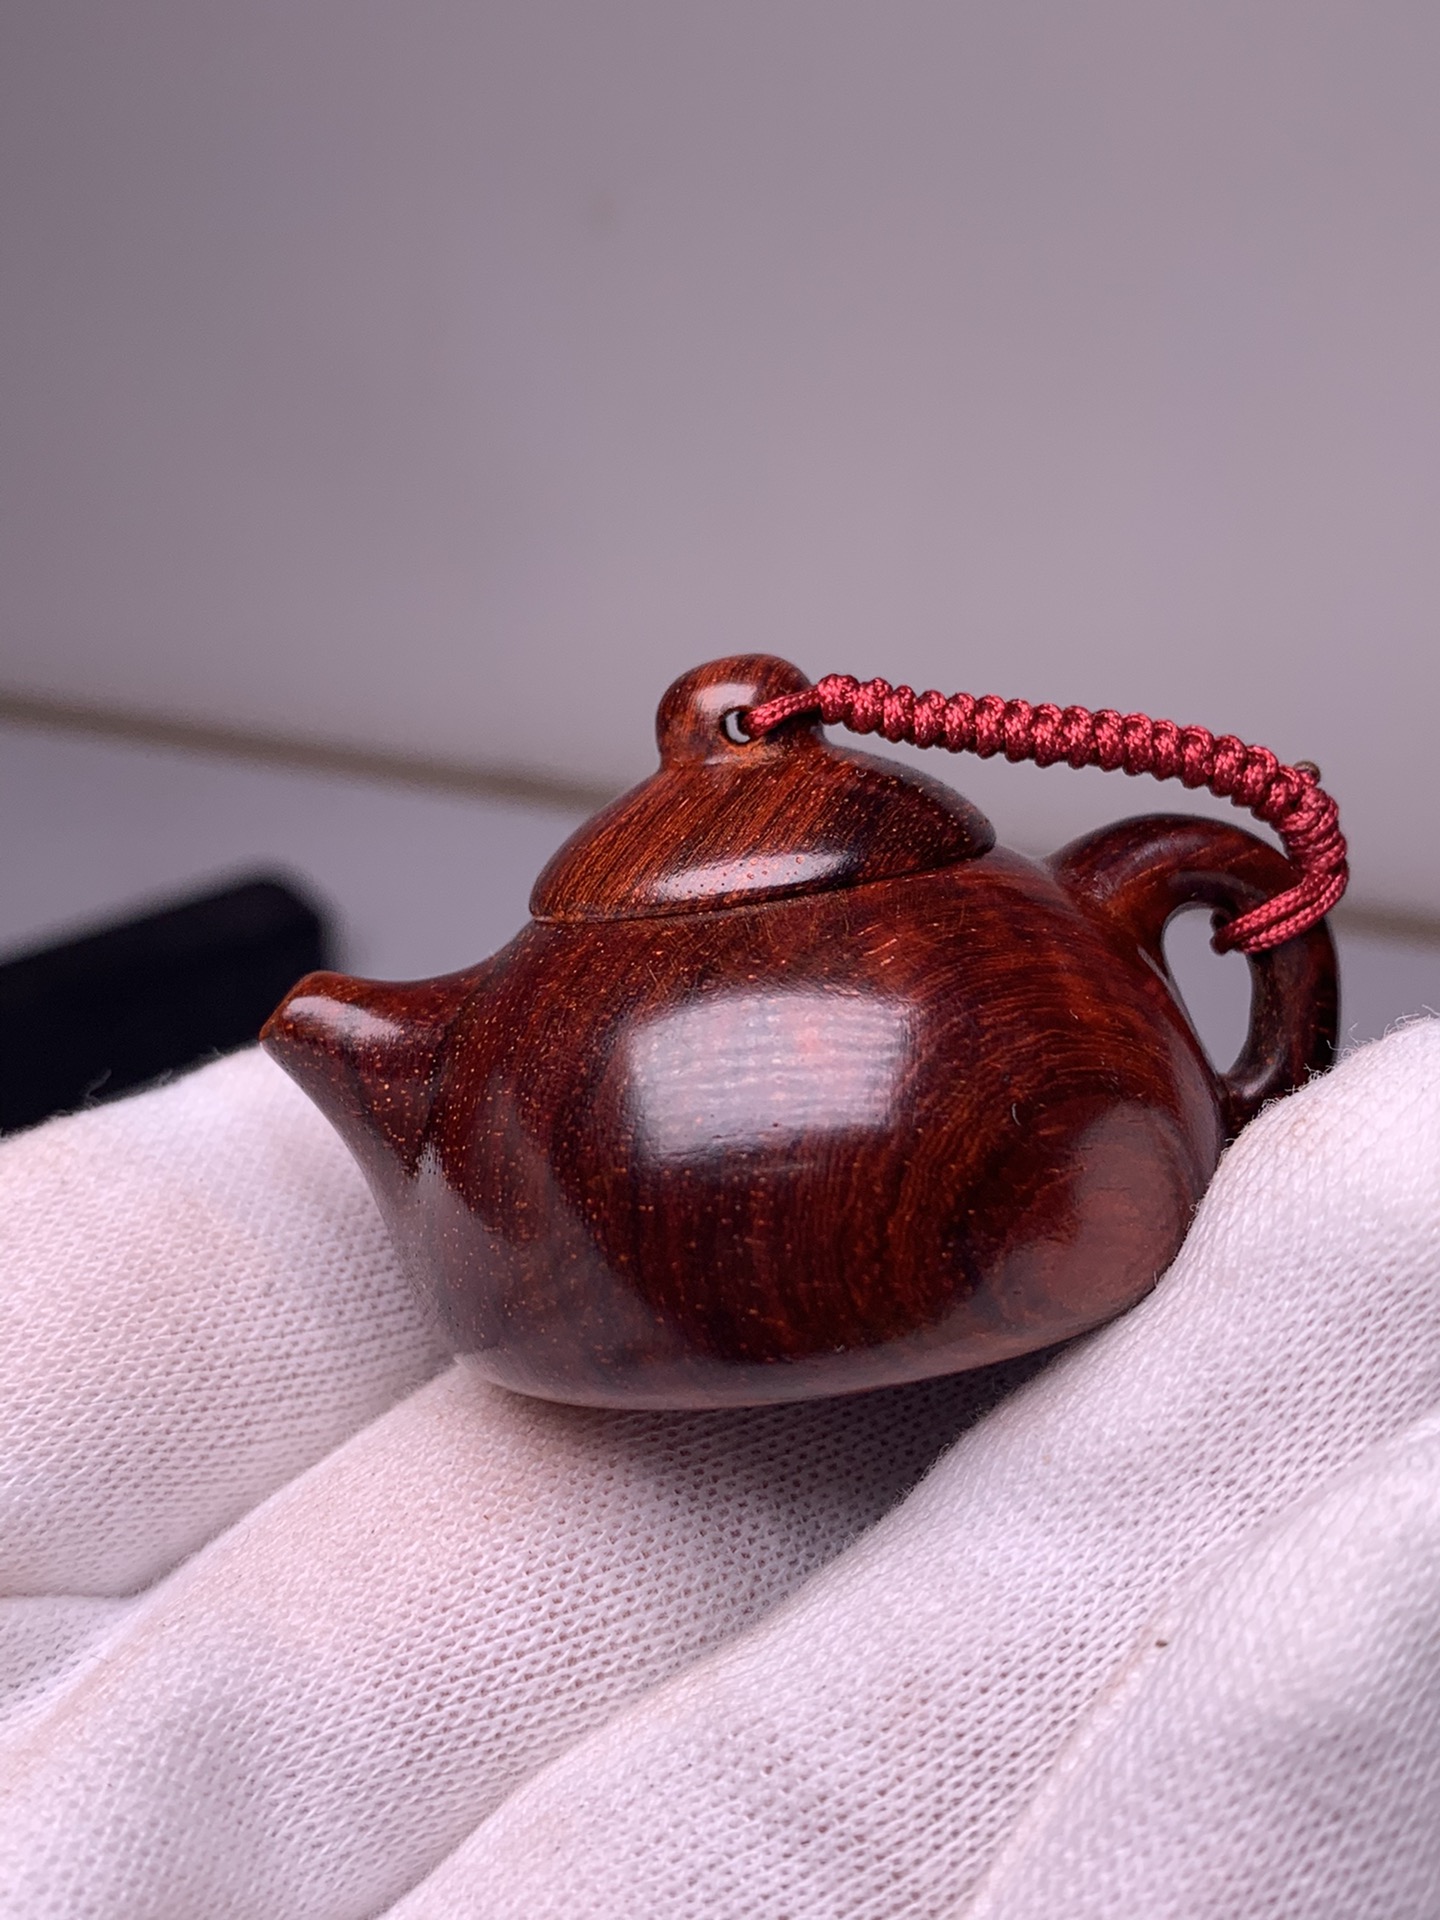 超小茶壶印度小叶紫檀木雕刻茶壶装饰摆件手把件